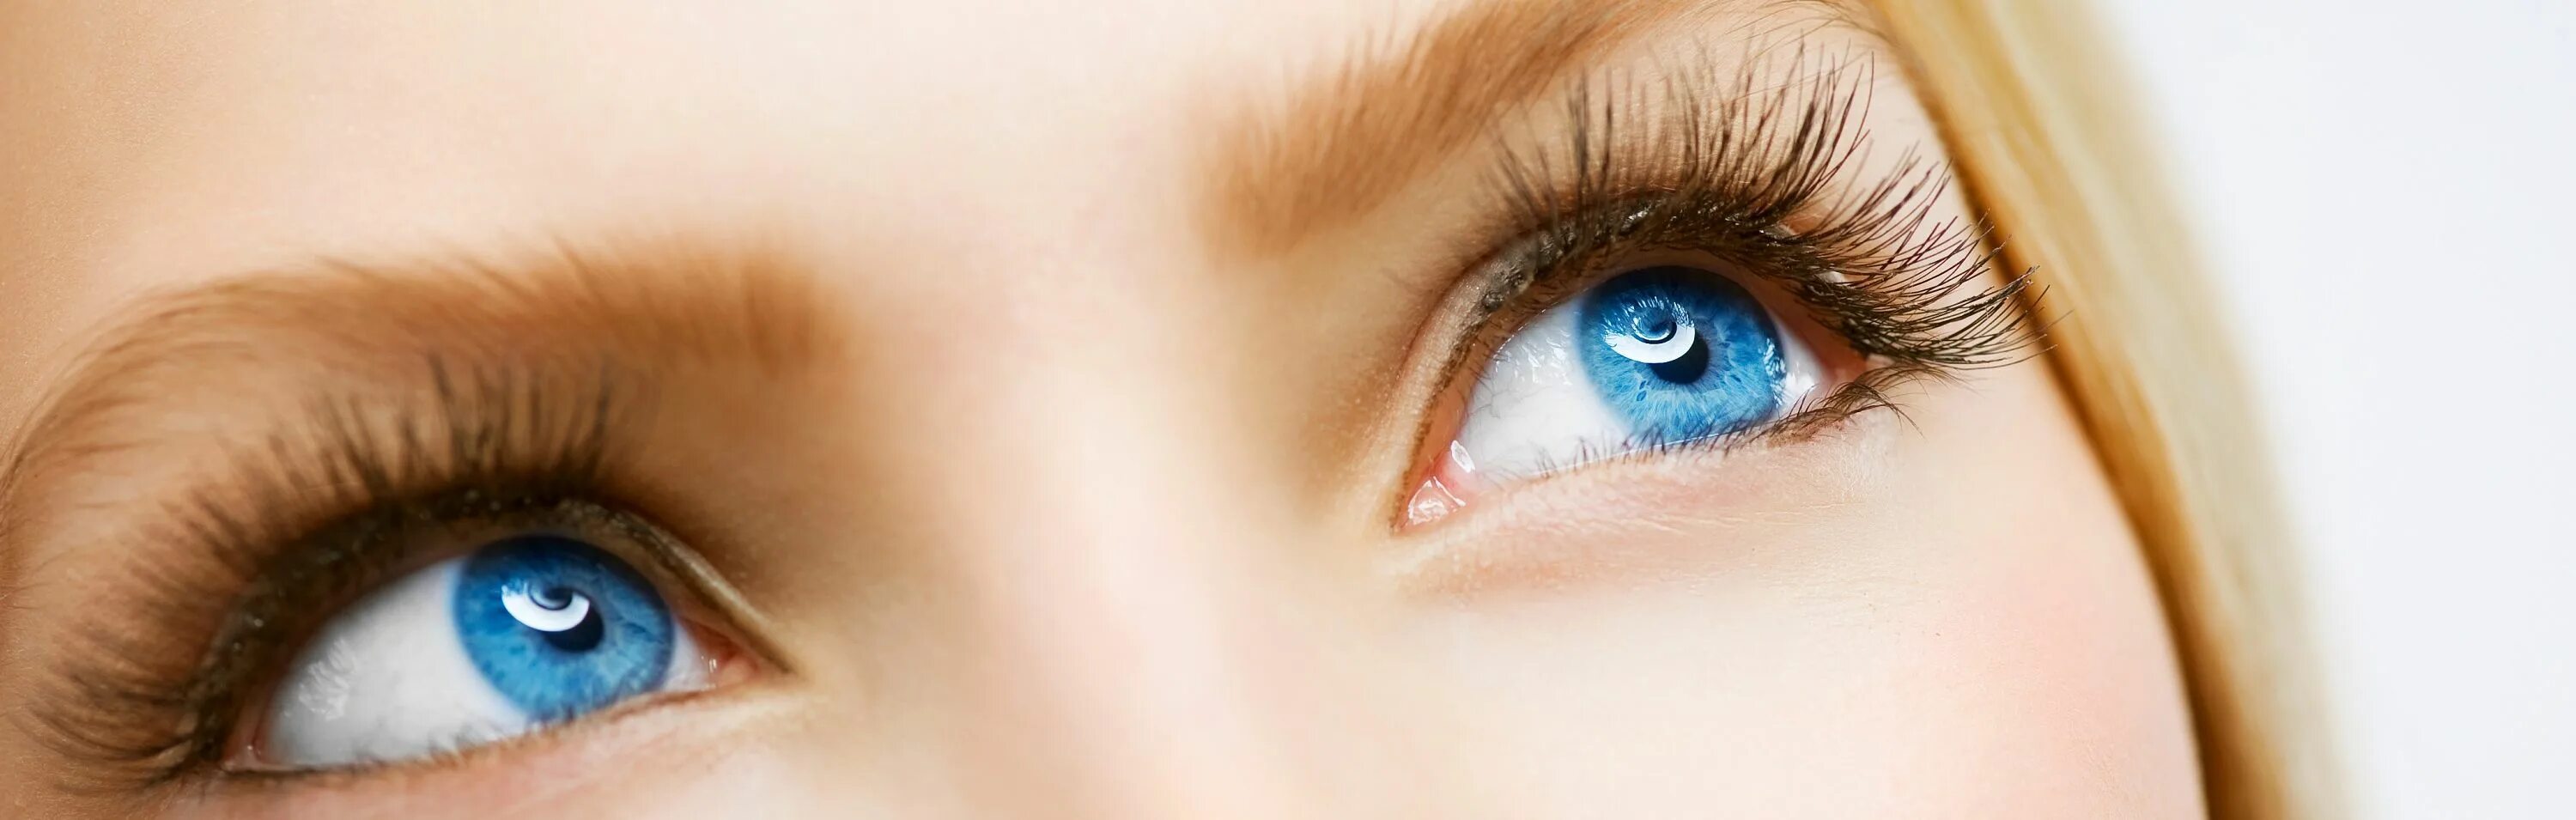 Про голубоглазую. Голубые глаза с длинными ресницами. Голубые глаза женские. Небесно голубые глаза. Здоровый глаз красивый голубой.